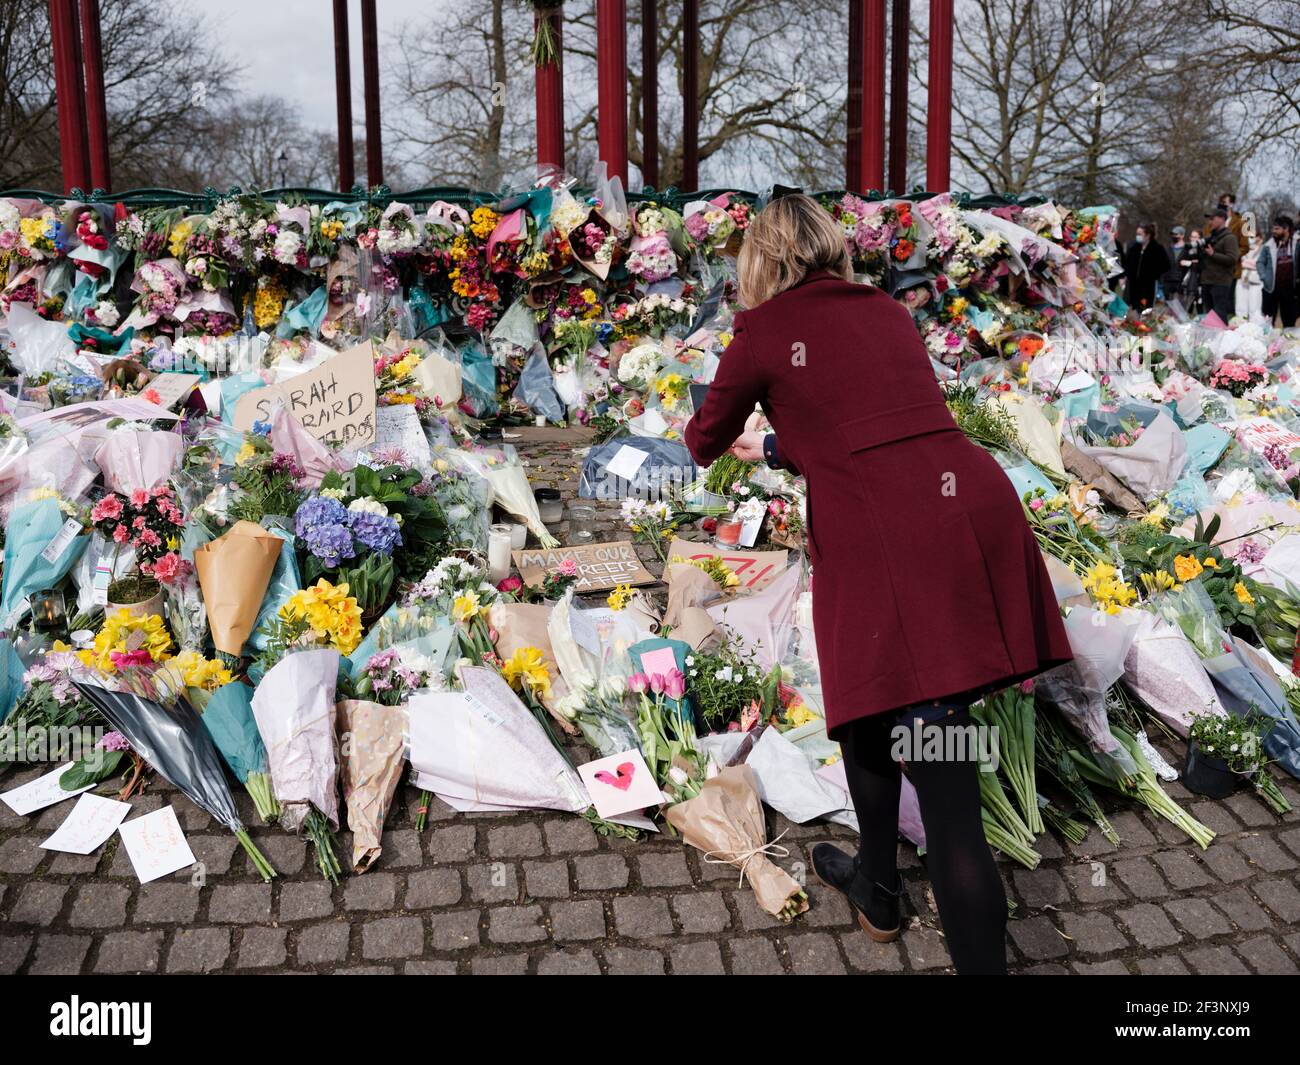 Un luto coloca flores y velas ligeras para Sarah Everard en el bandstand de Clapham Common, 14 de marzo de 2021 Foto de stock